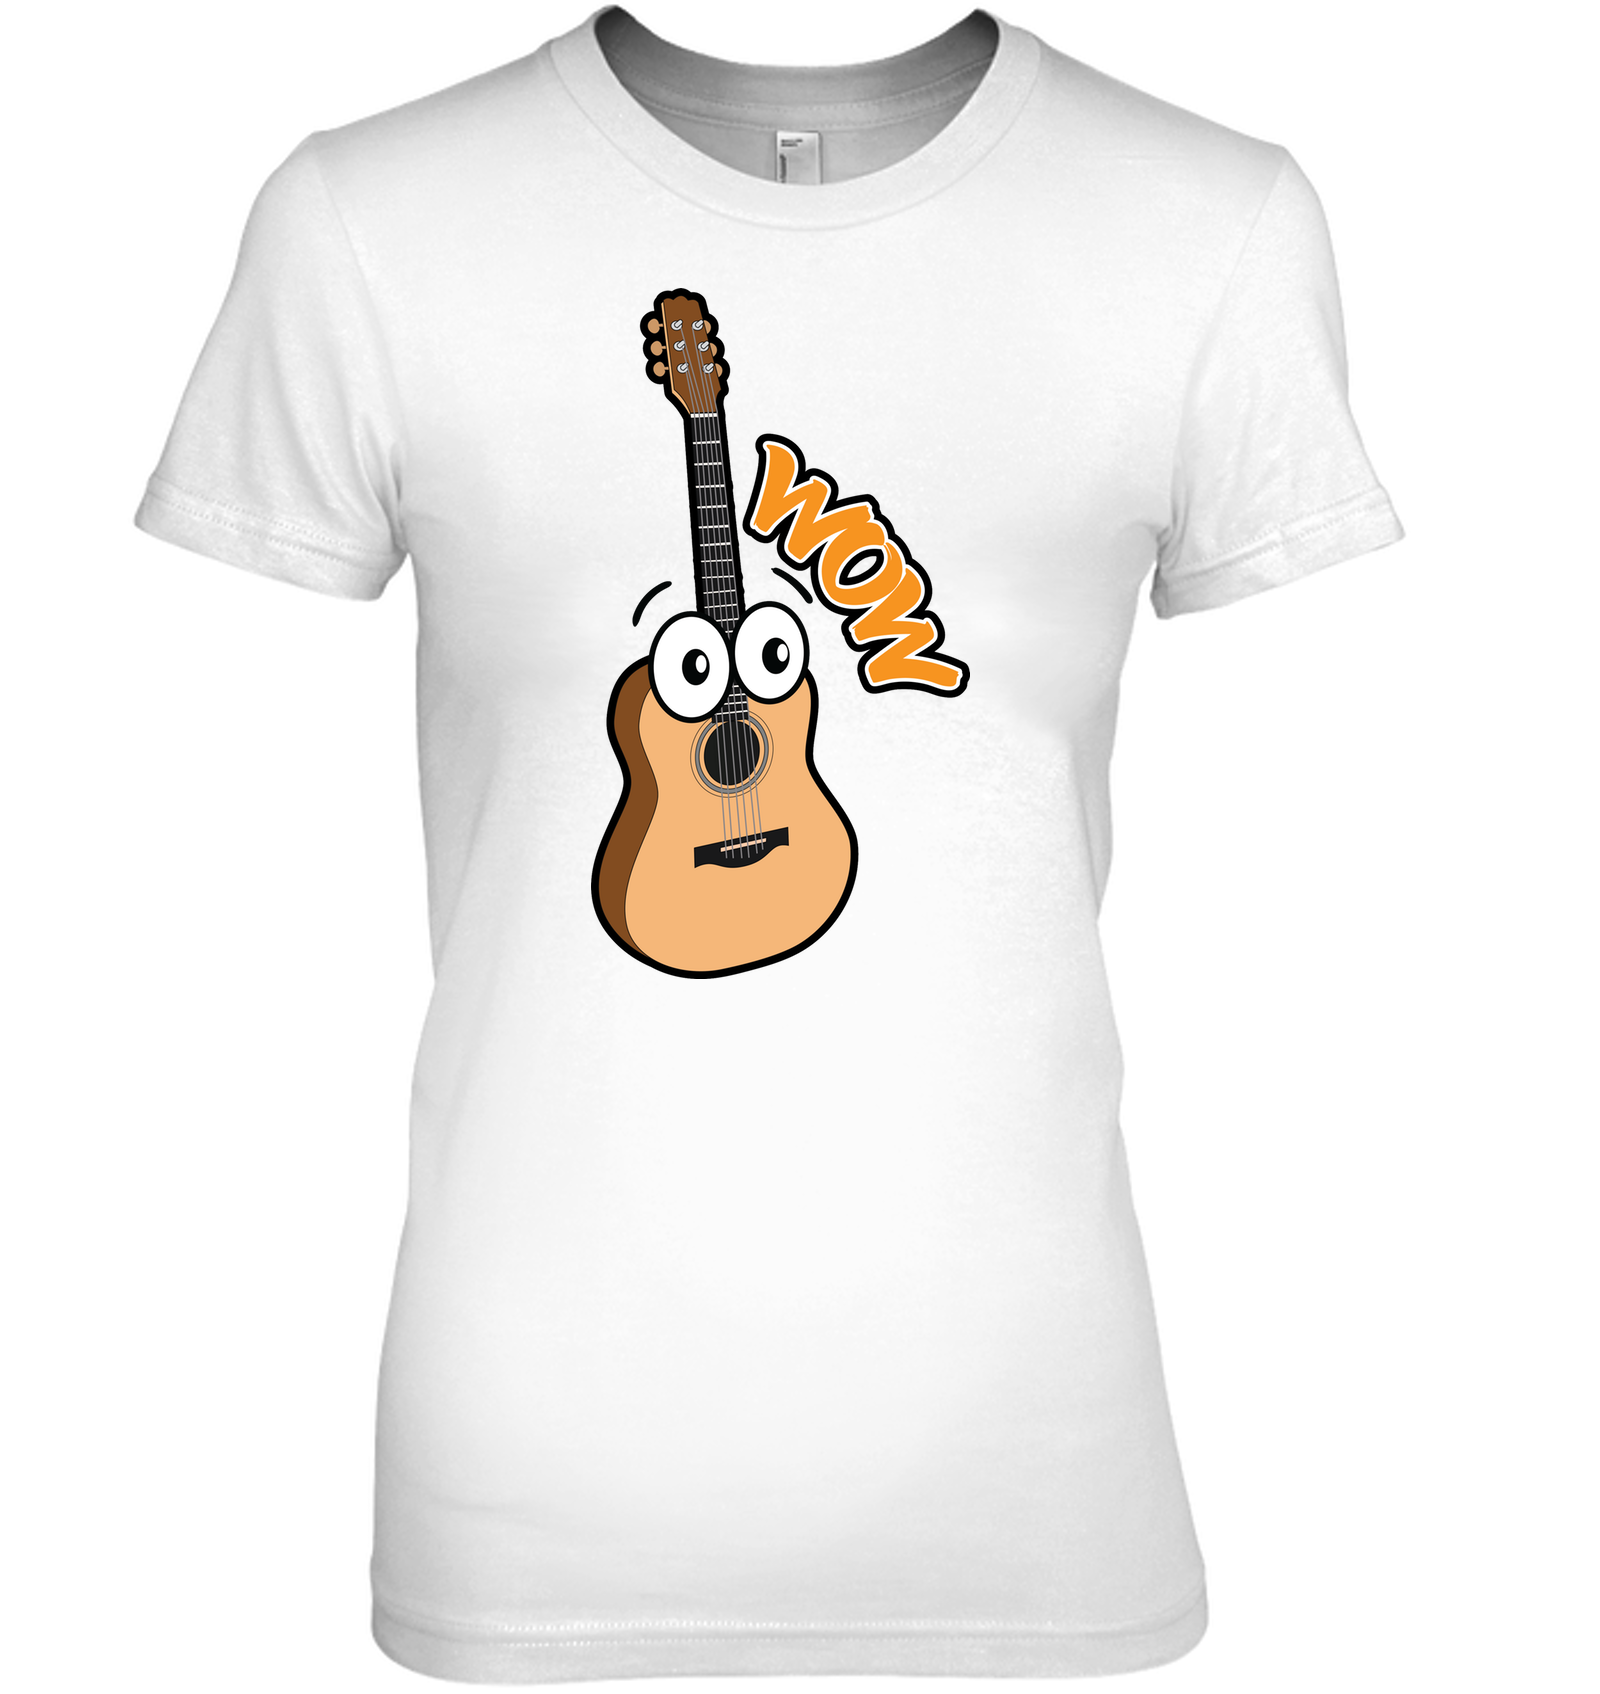 Wow Guitar - Hanes Women's Nano-T® T-Shirt